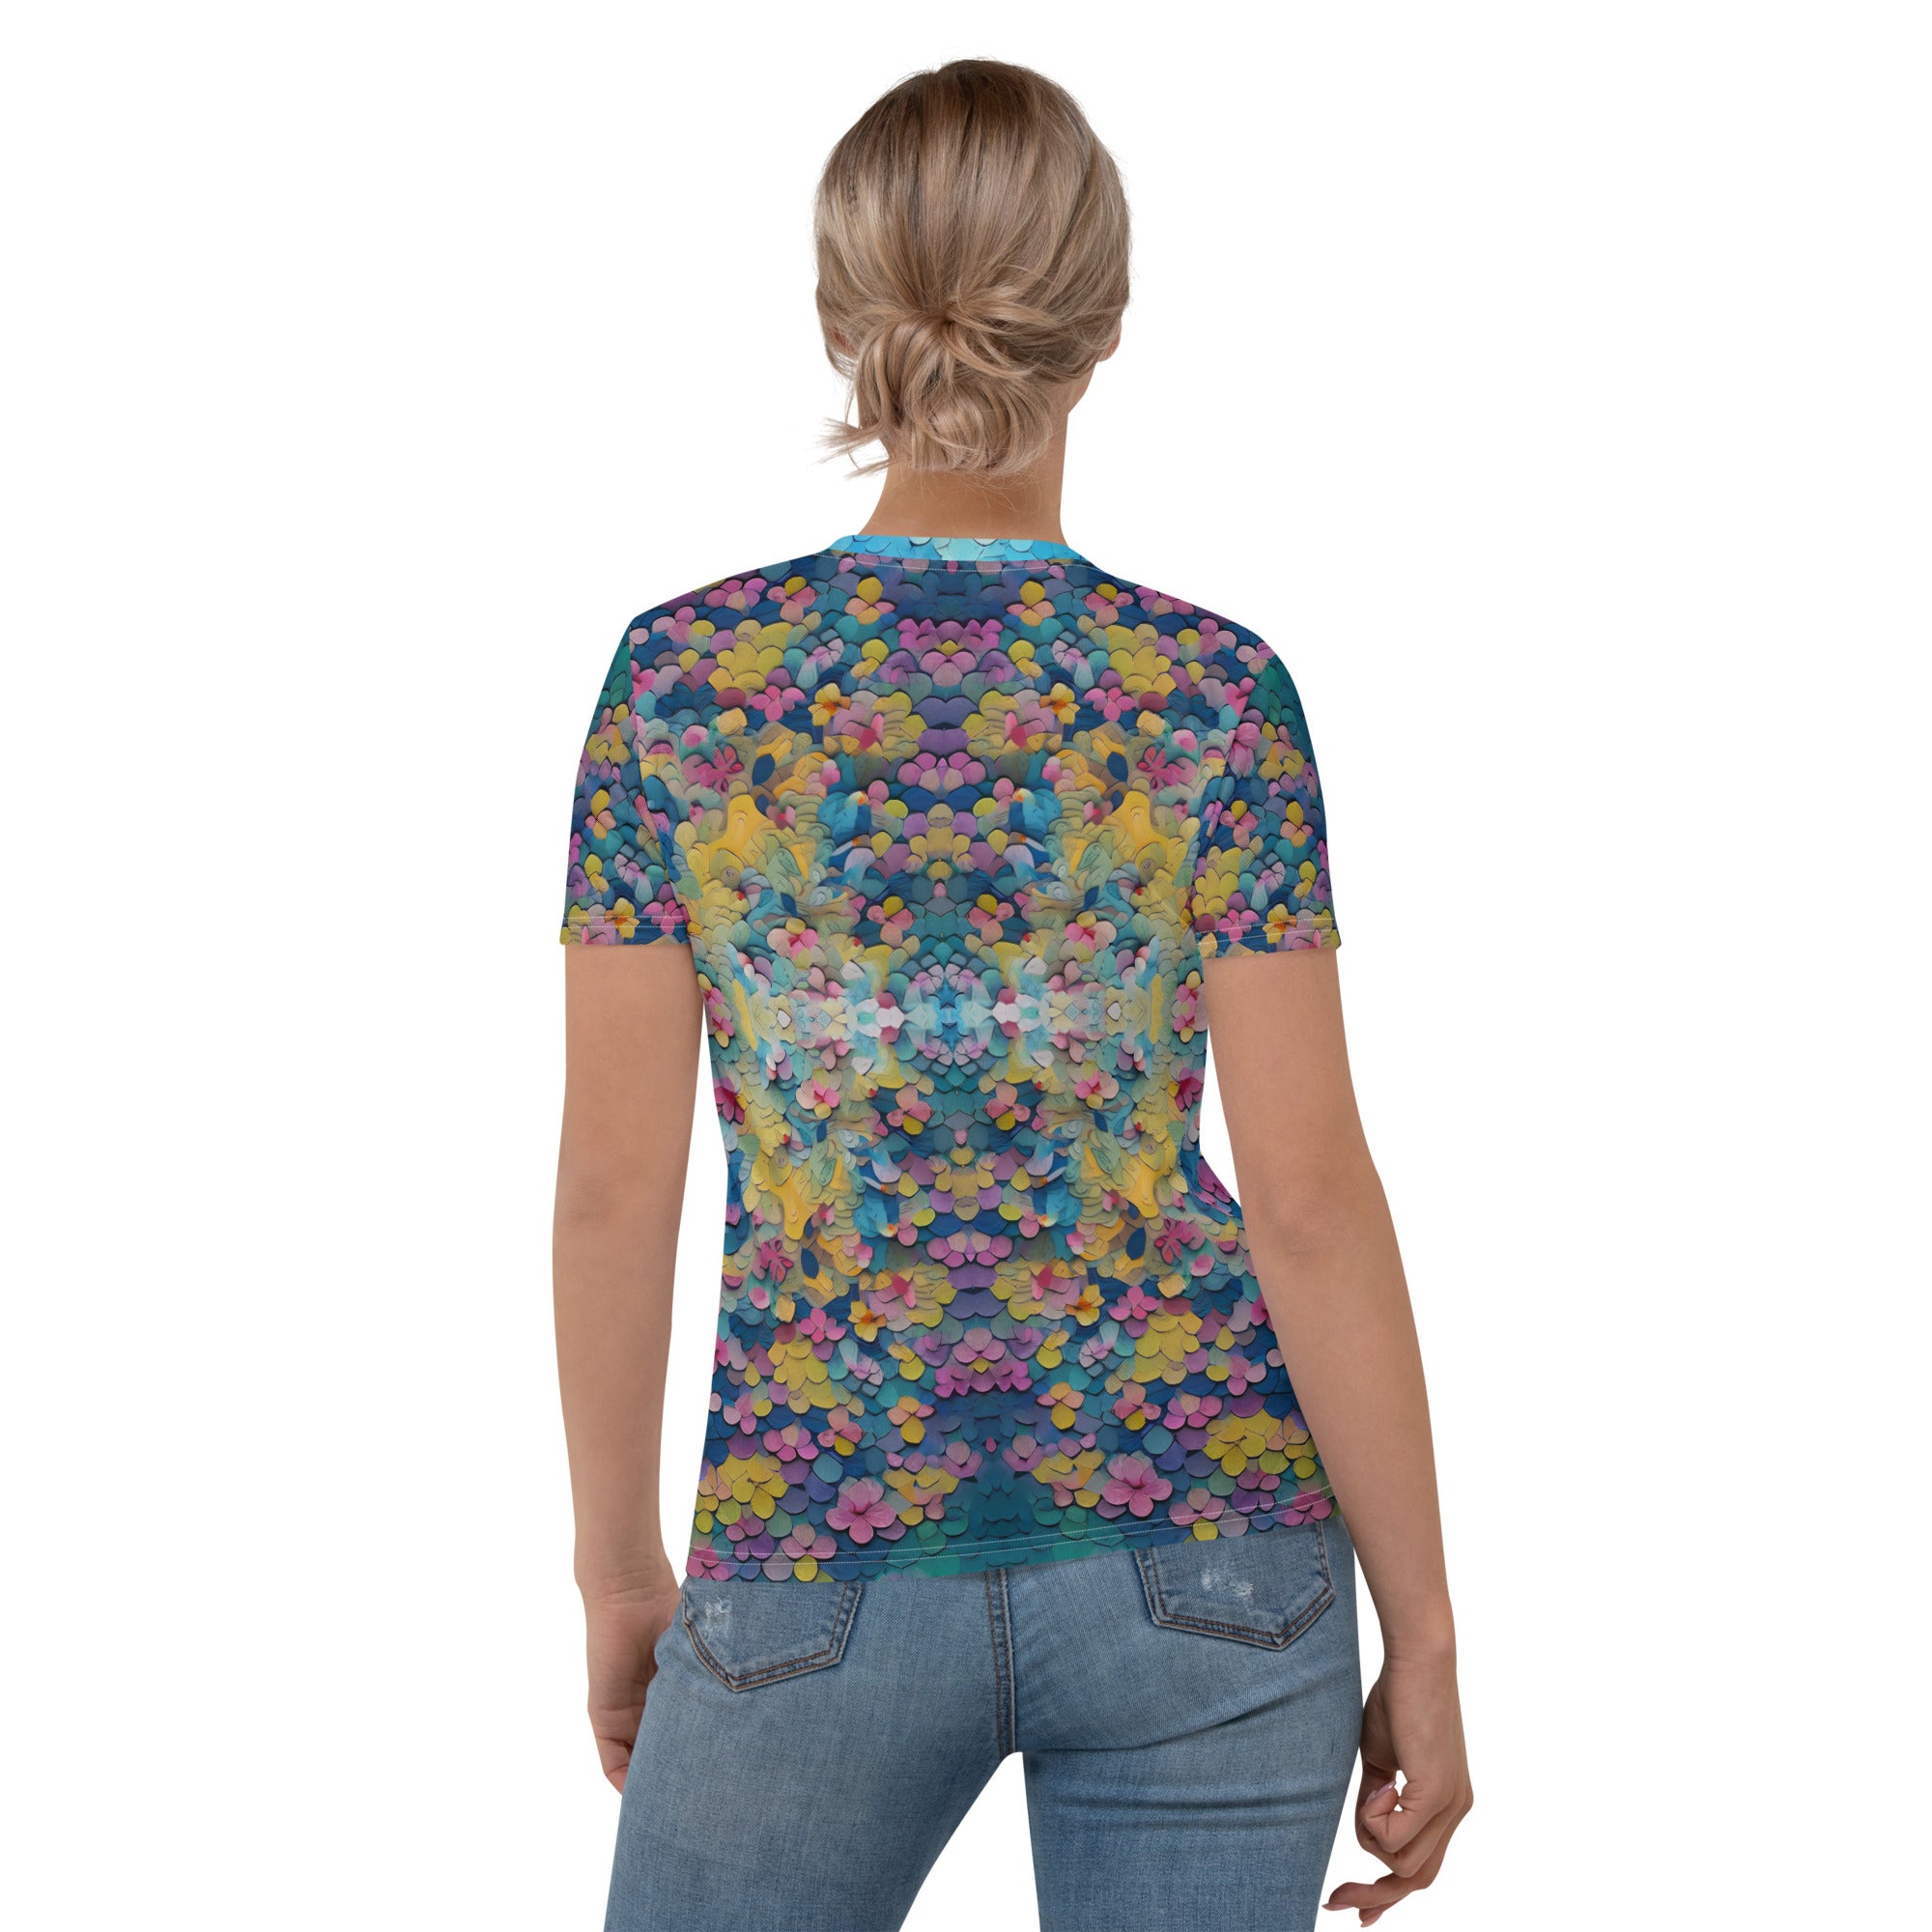 Artistic Mystic Mandala women's T-shirt featuring mandala patterns.